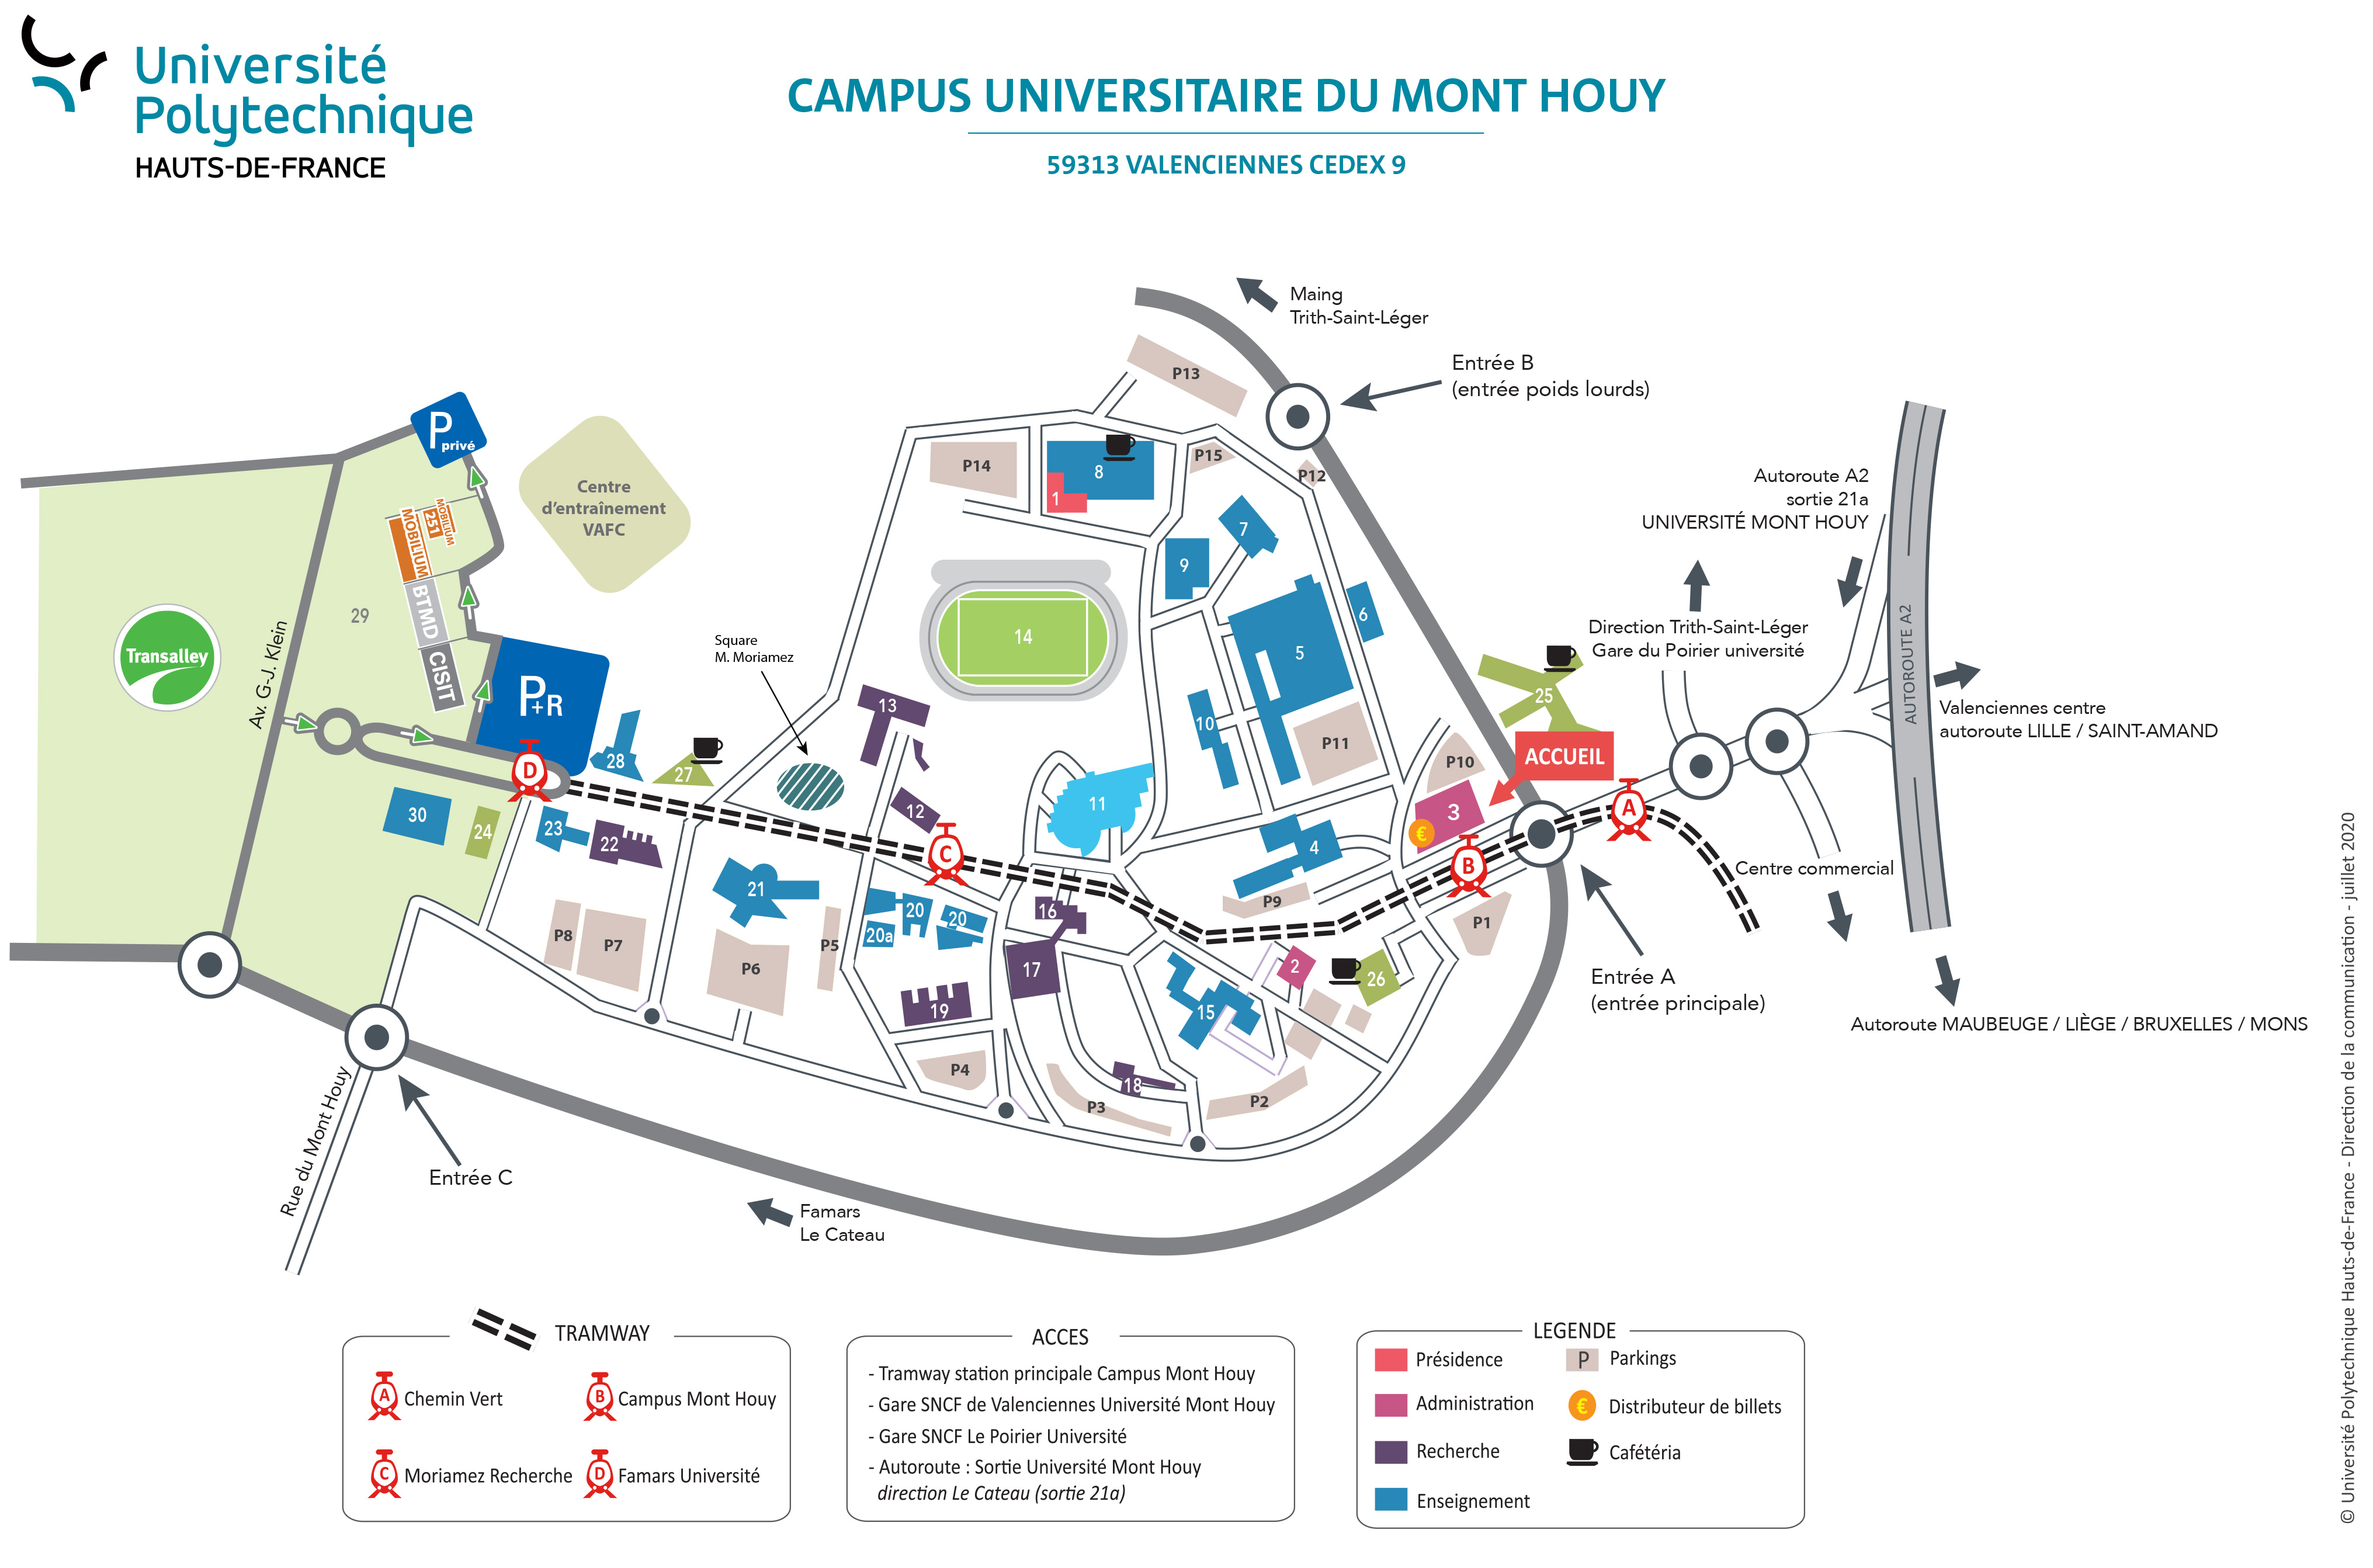 Cliquer sur le plan du Campus du Mont Houy pour, zoomer, télécharger en PDF...